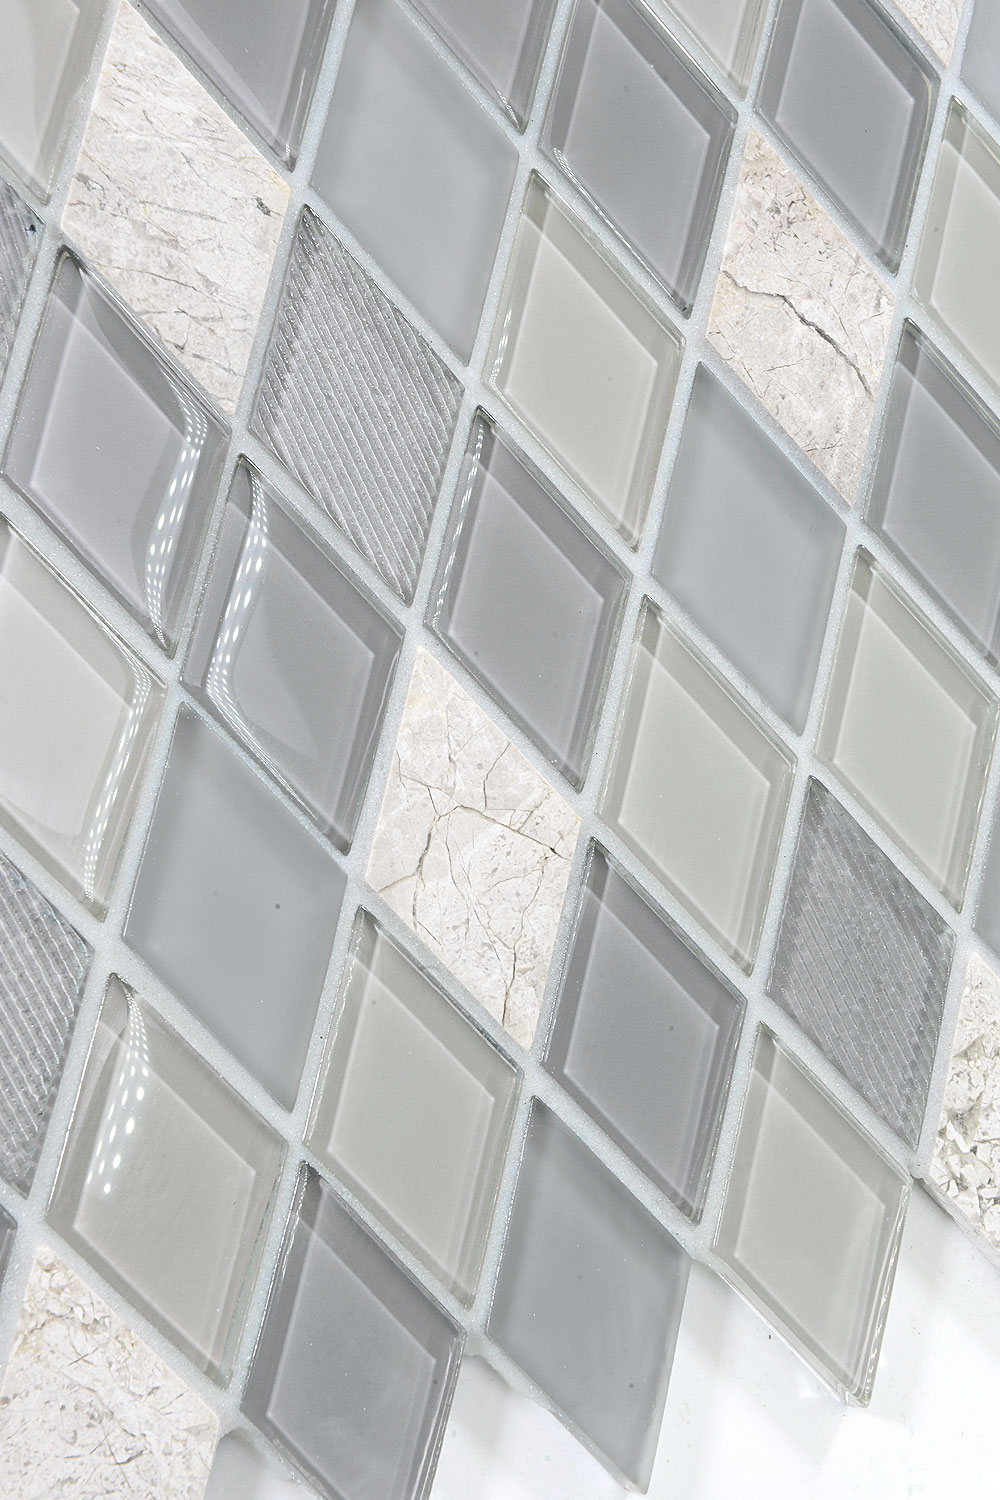 Gray Glass and Marble Rhomboid Design Backsplash Tile